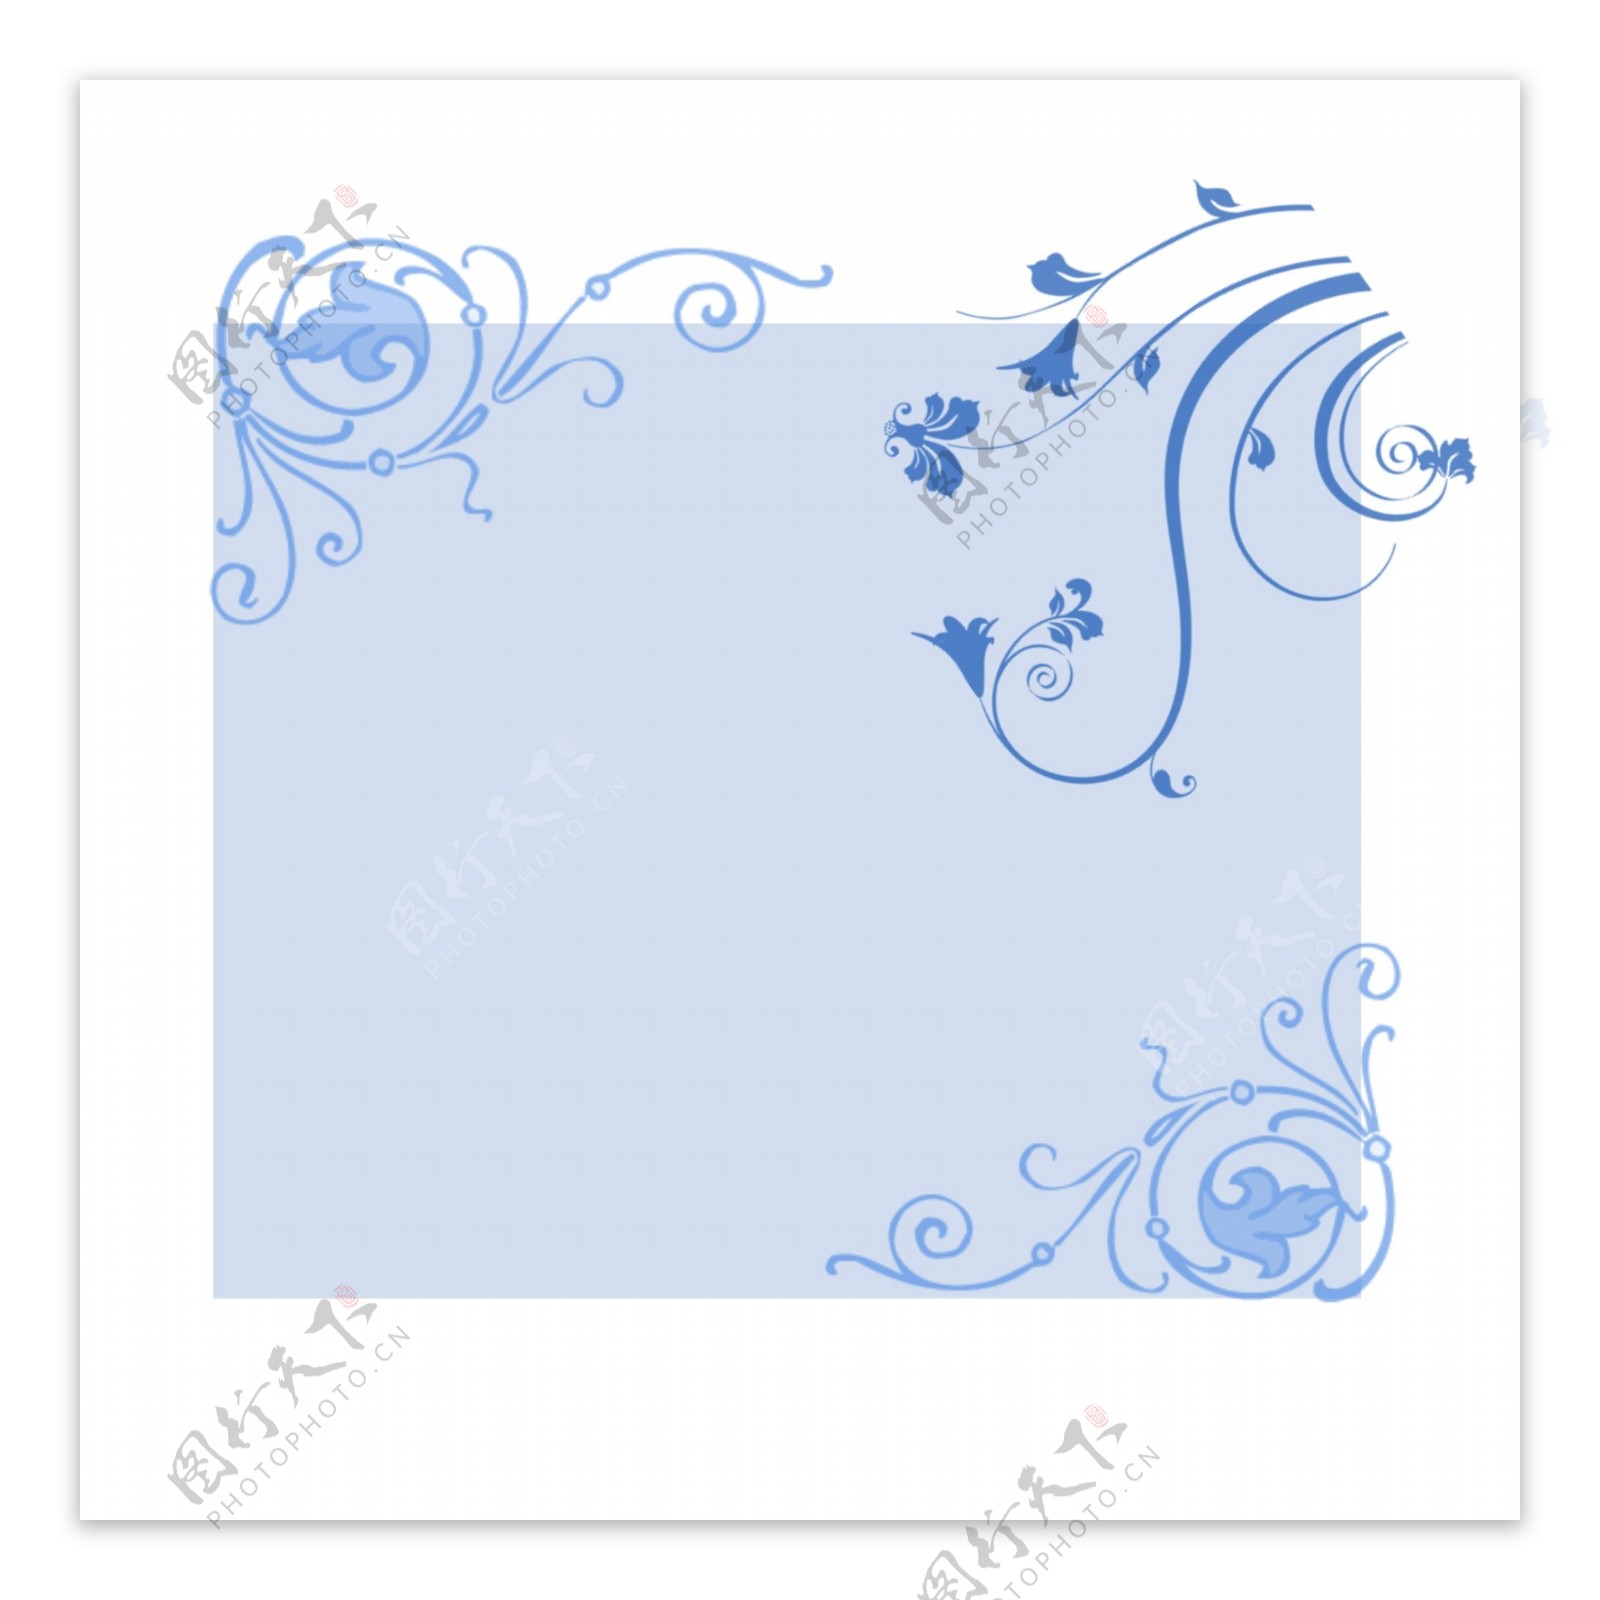 淡雅蓝色鲜花边框欧式花纹元素